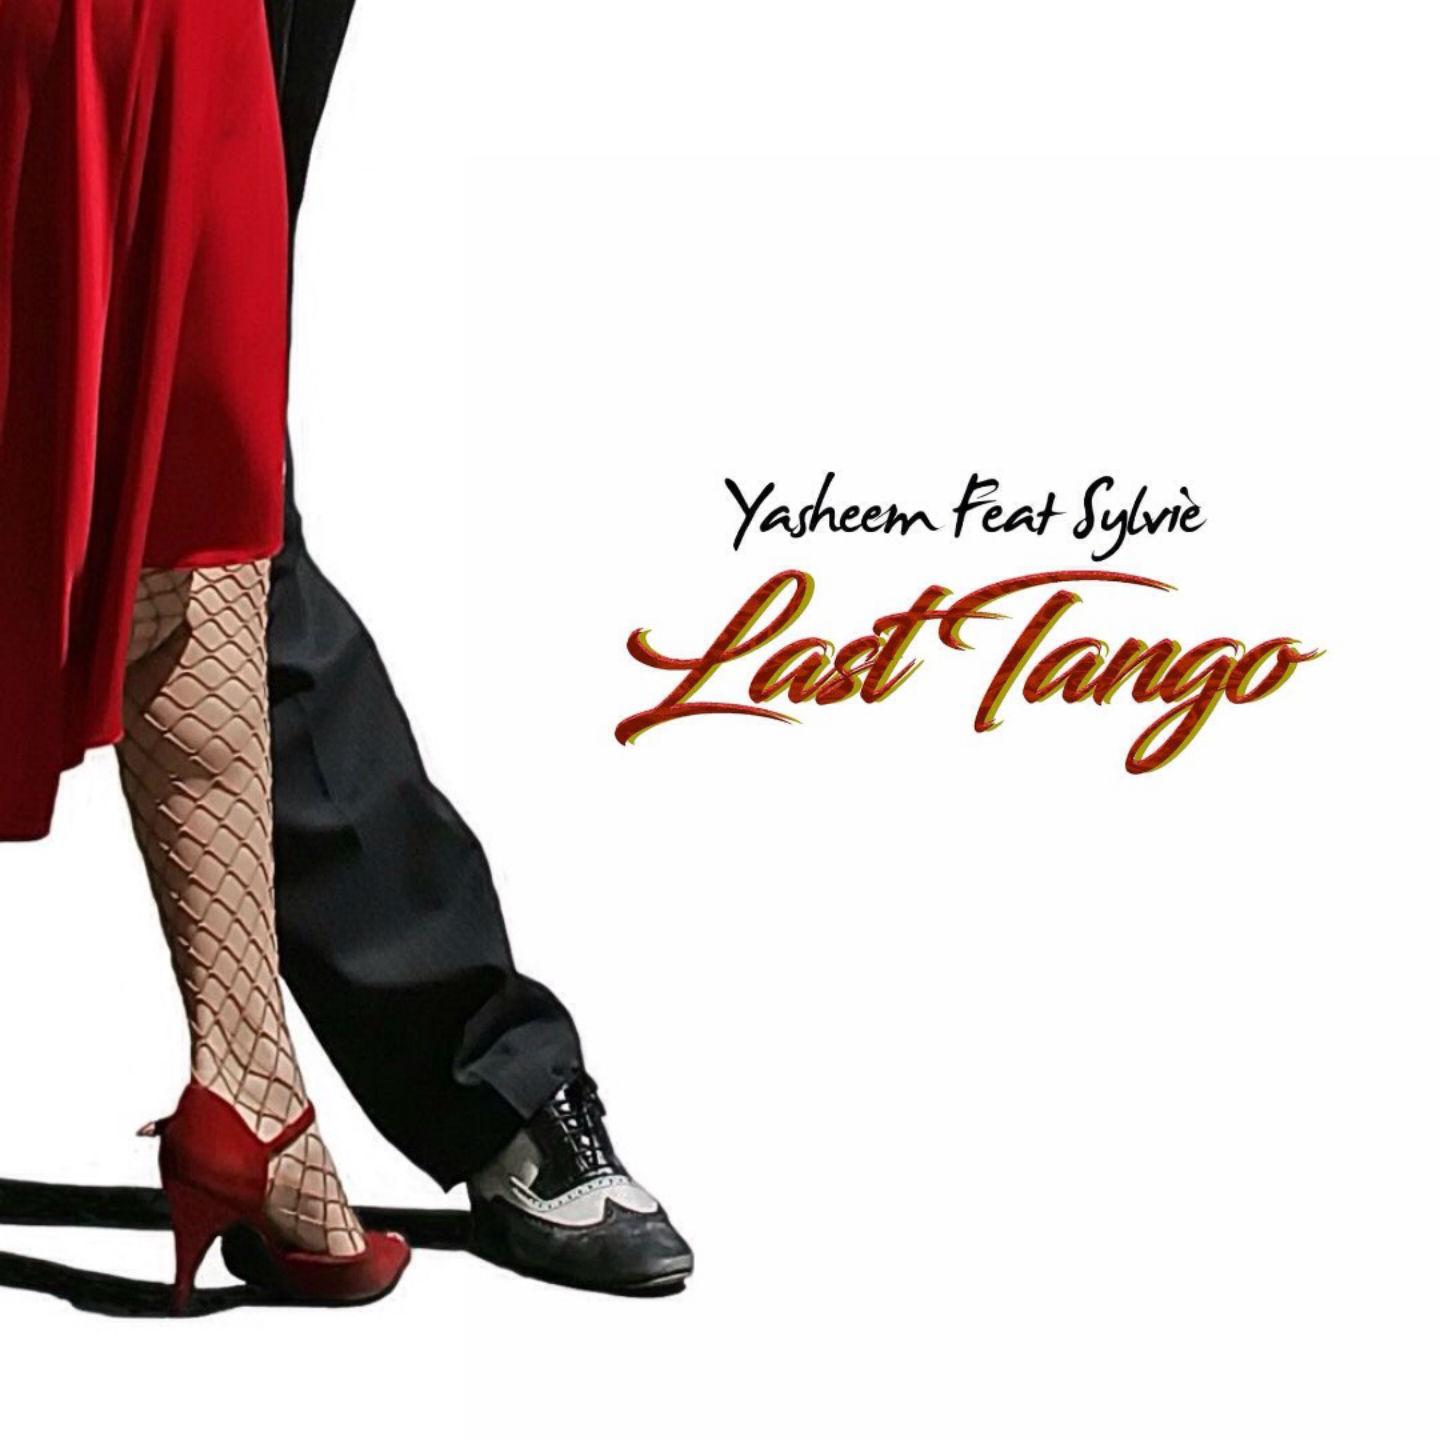 Last Tango (AlexSalis Radio Version)